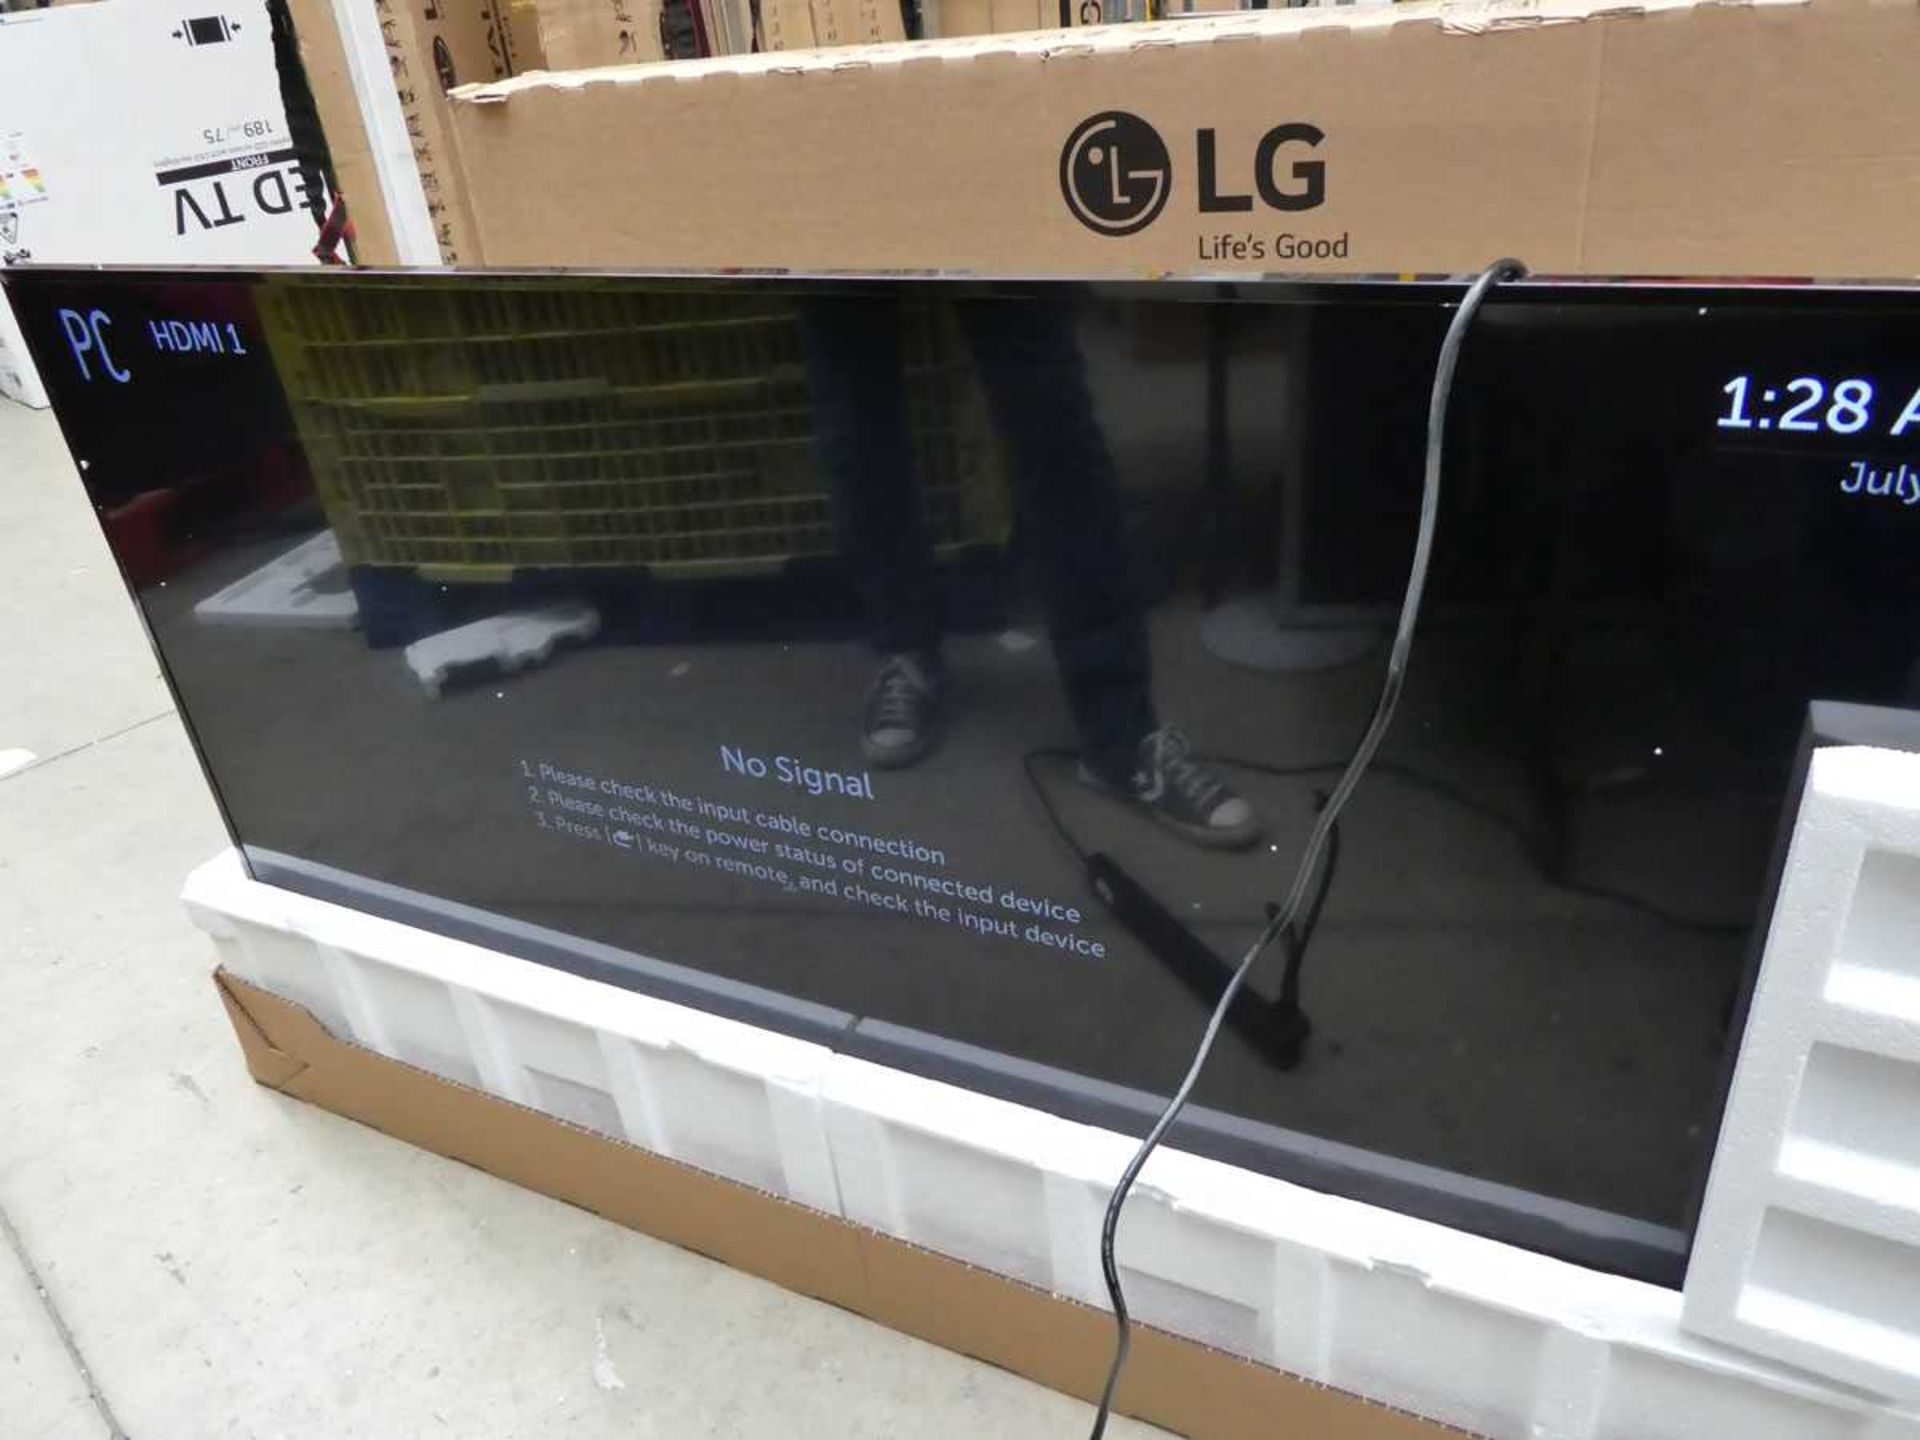 LG Model 65UM3DG 65" Digital Signage Display 4K UHD LED Monitor with detachable remote sensor, - Image 2 of 3